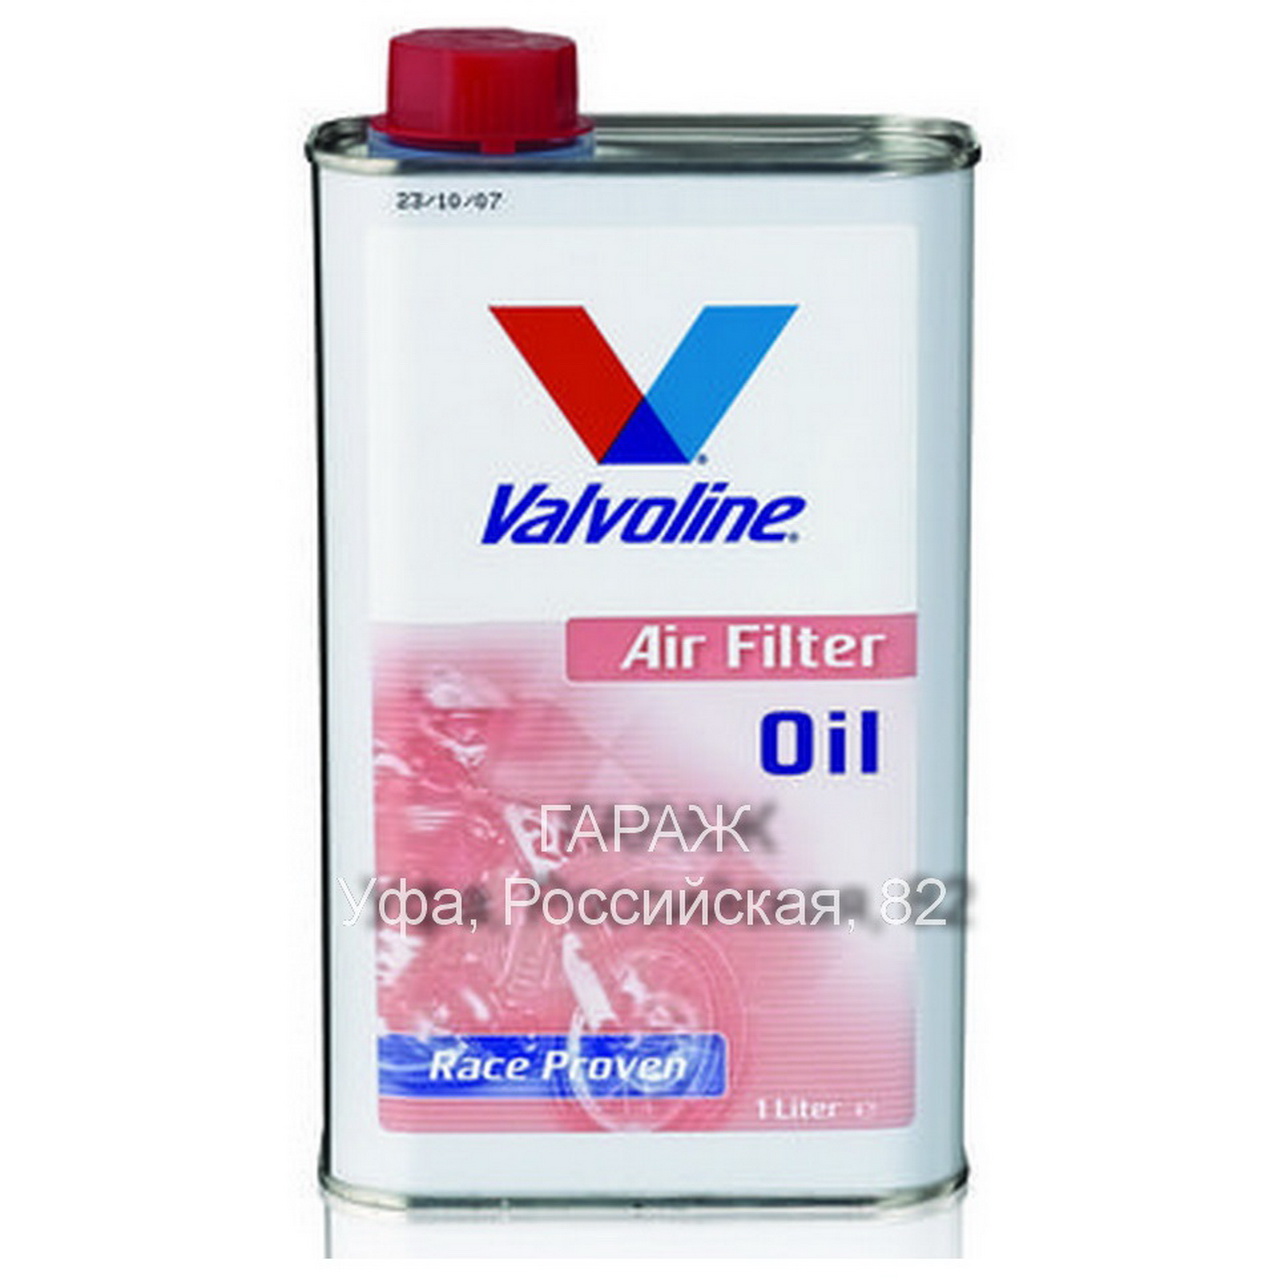 Пропитка фильтра маслом. Air Filter Oil 1л. Valvoline ve885. Ve885 Valvoline. Пропитка для фильтров мотоцикла Air Filter. Пропитка для фильтра Вальволин.